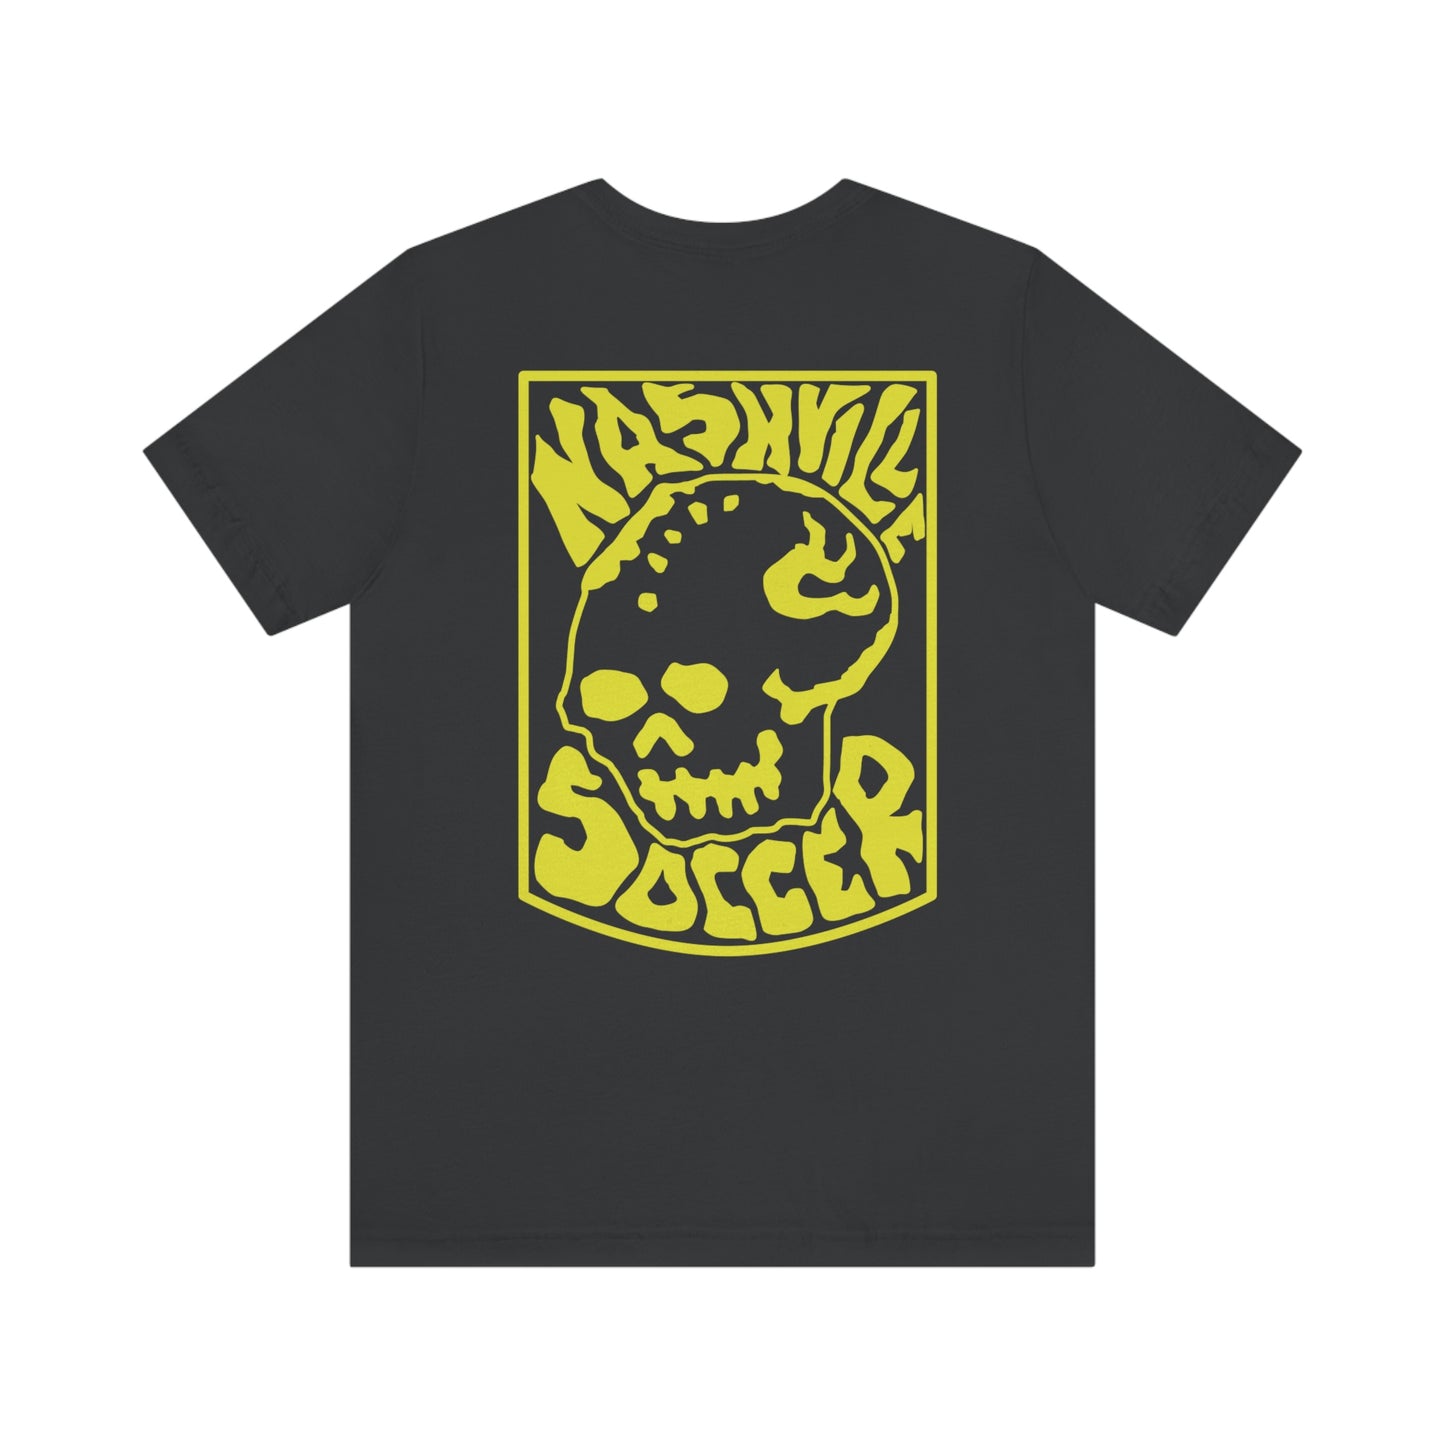 Nashville Soccer Mori Skull Crest Back Print